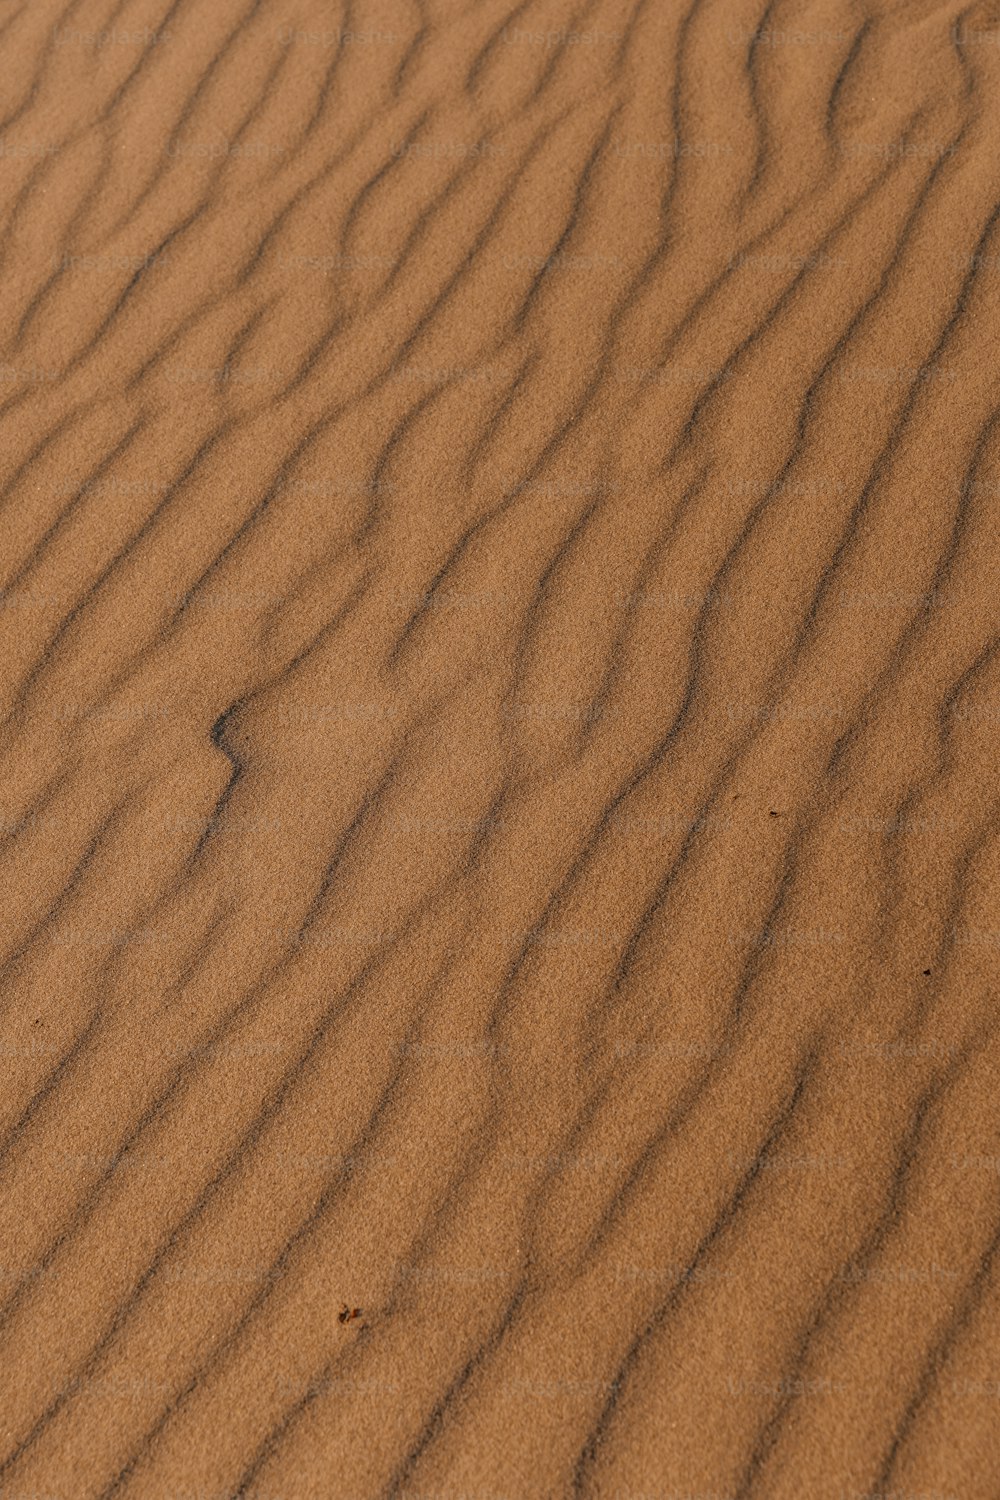 una duna de arena con un pequeño parche de hierba que crece fuera de ella